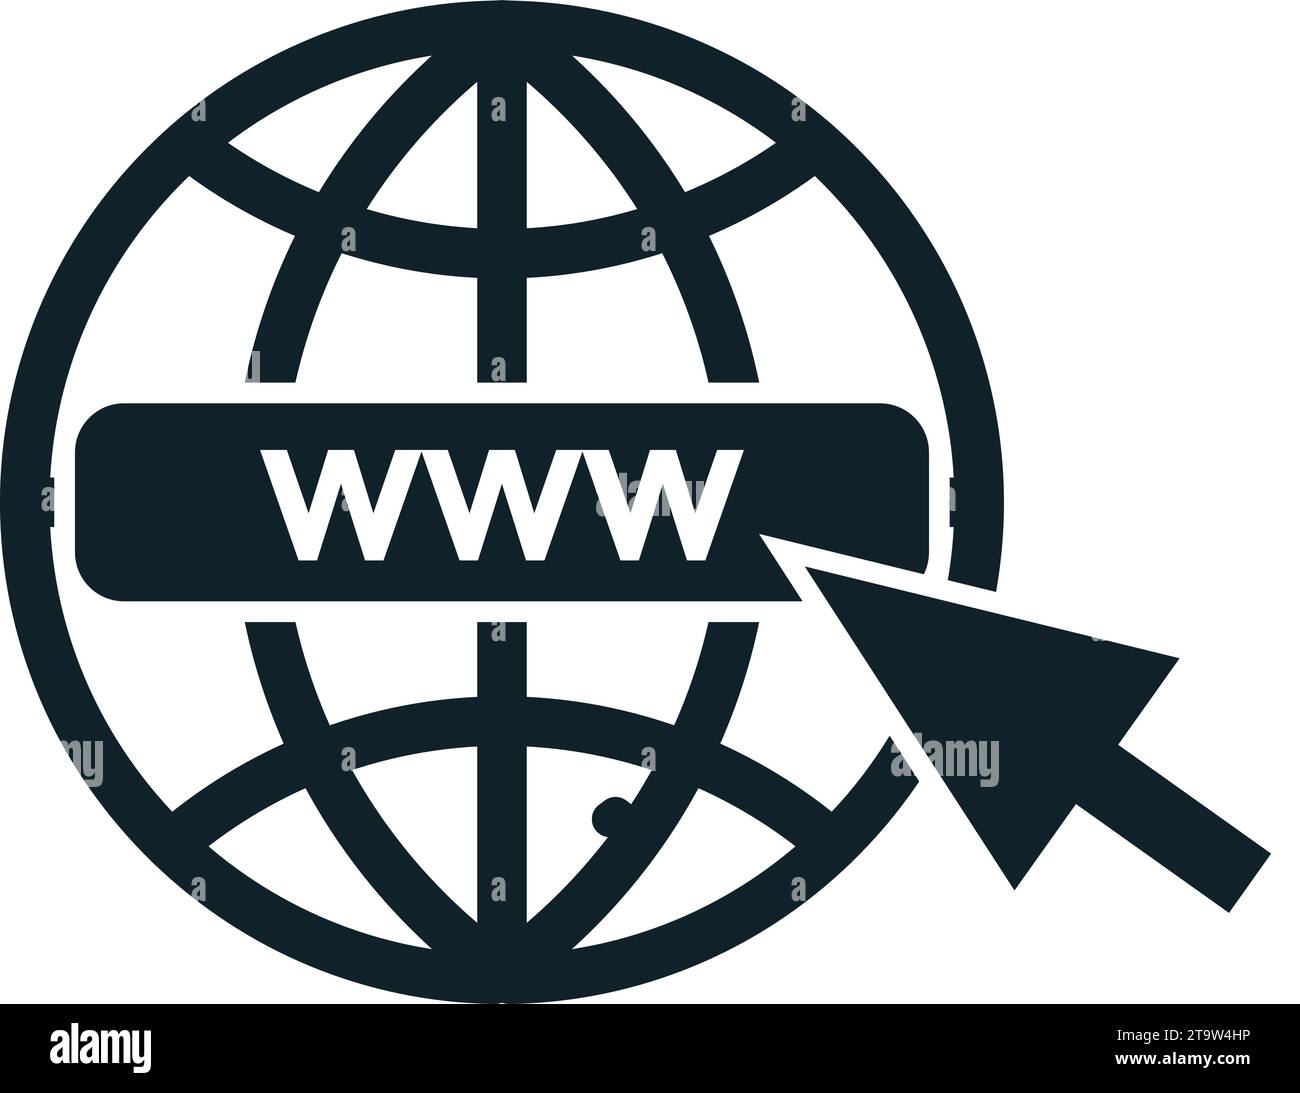 Internet symbol Go to web Icon. www icon Web click icon. Globe and arrow symbol. Stock Vector